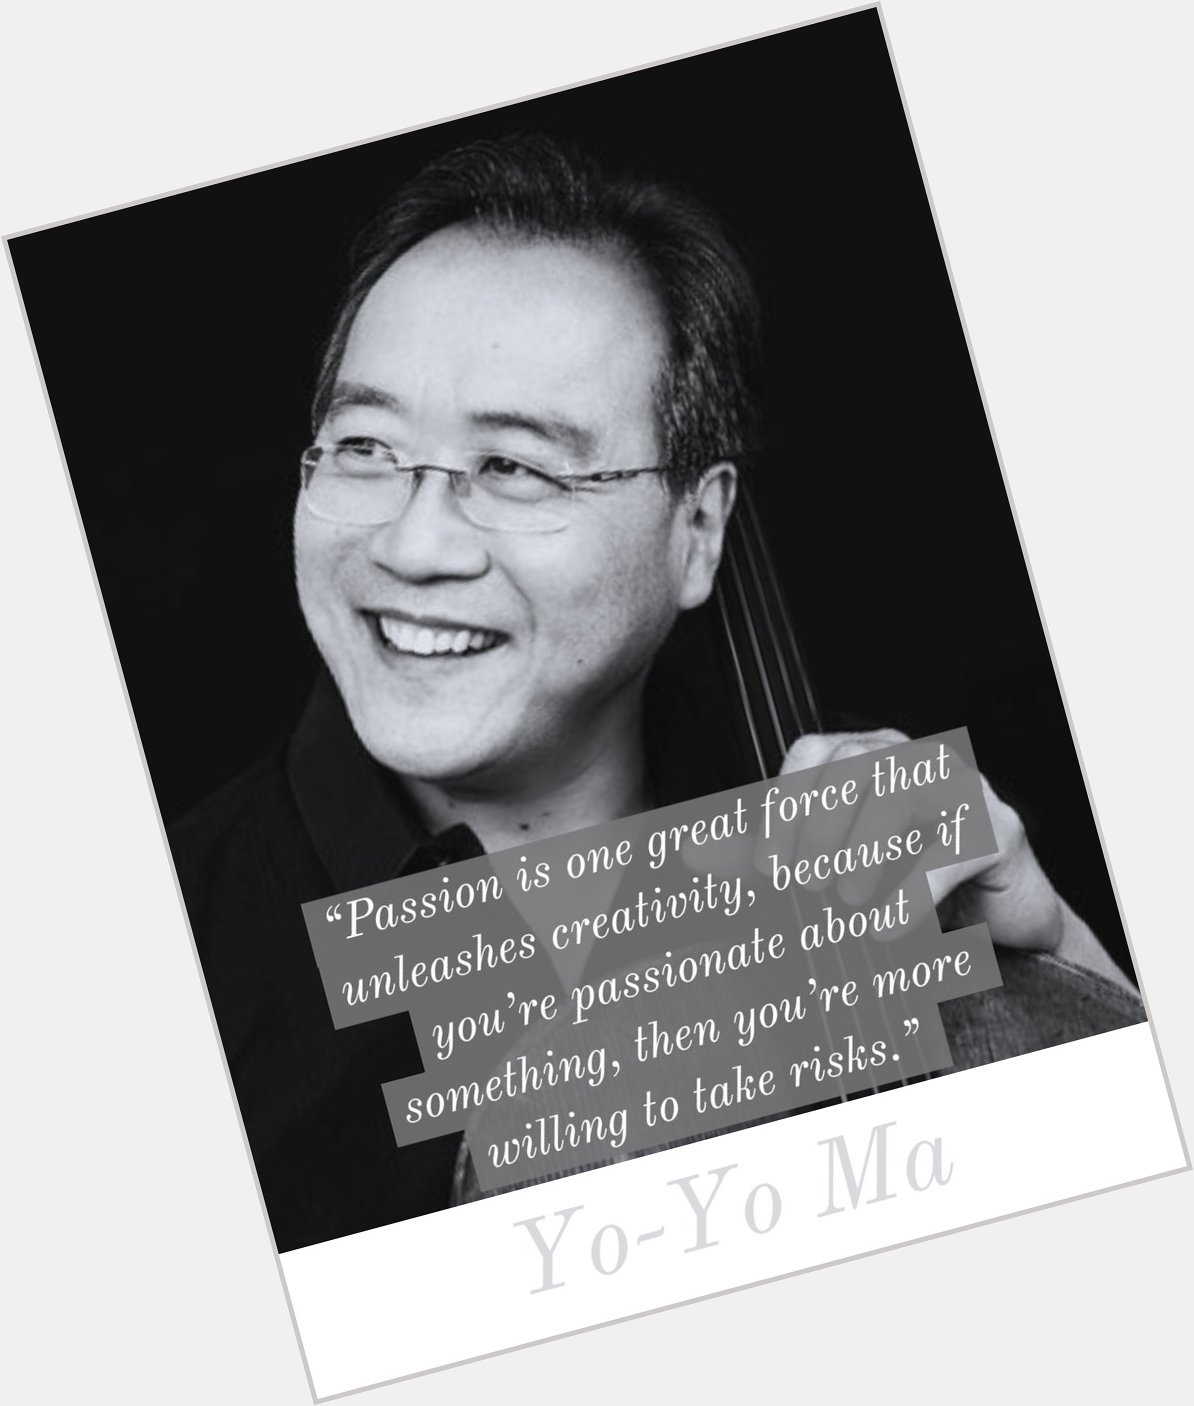 Happy birthday to the legendary Yo-Yo Ma! 